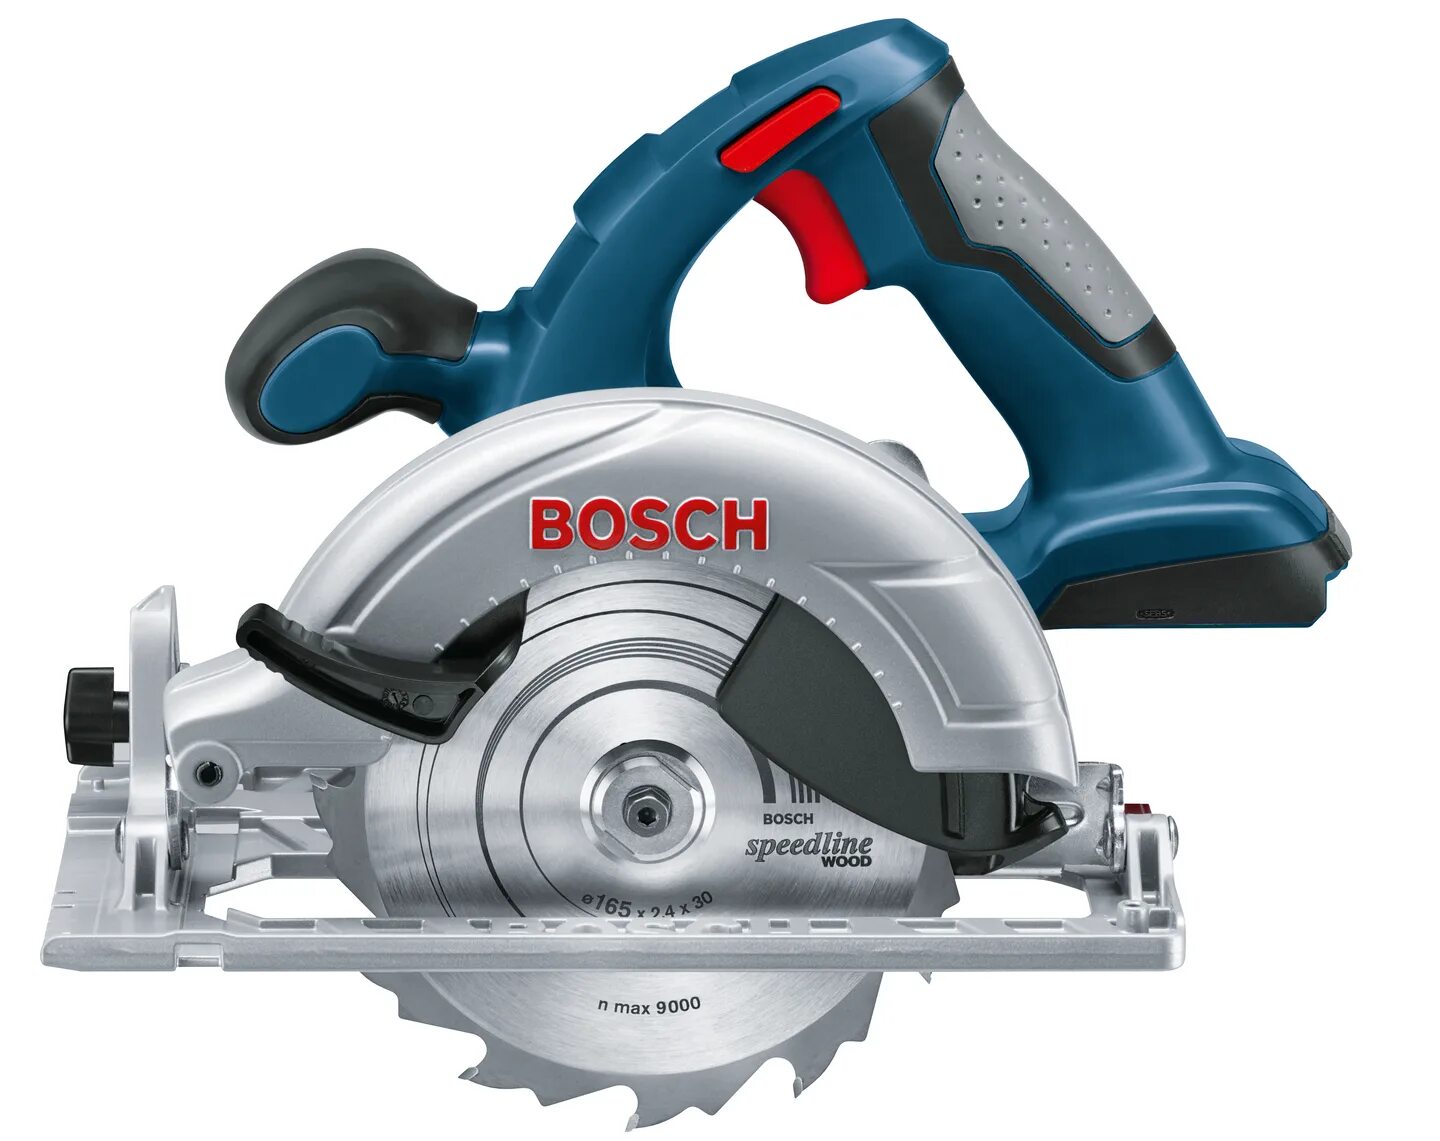 Аккумуляторная циркулярная пила Bosch GKS 18 V-li. Bosch дисковая пила GKS. Циркулярная пила Bosch 18v. Bosch 0615990k6n.